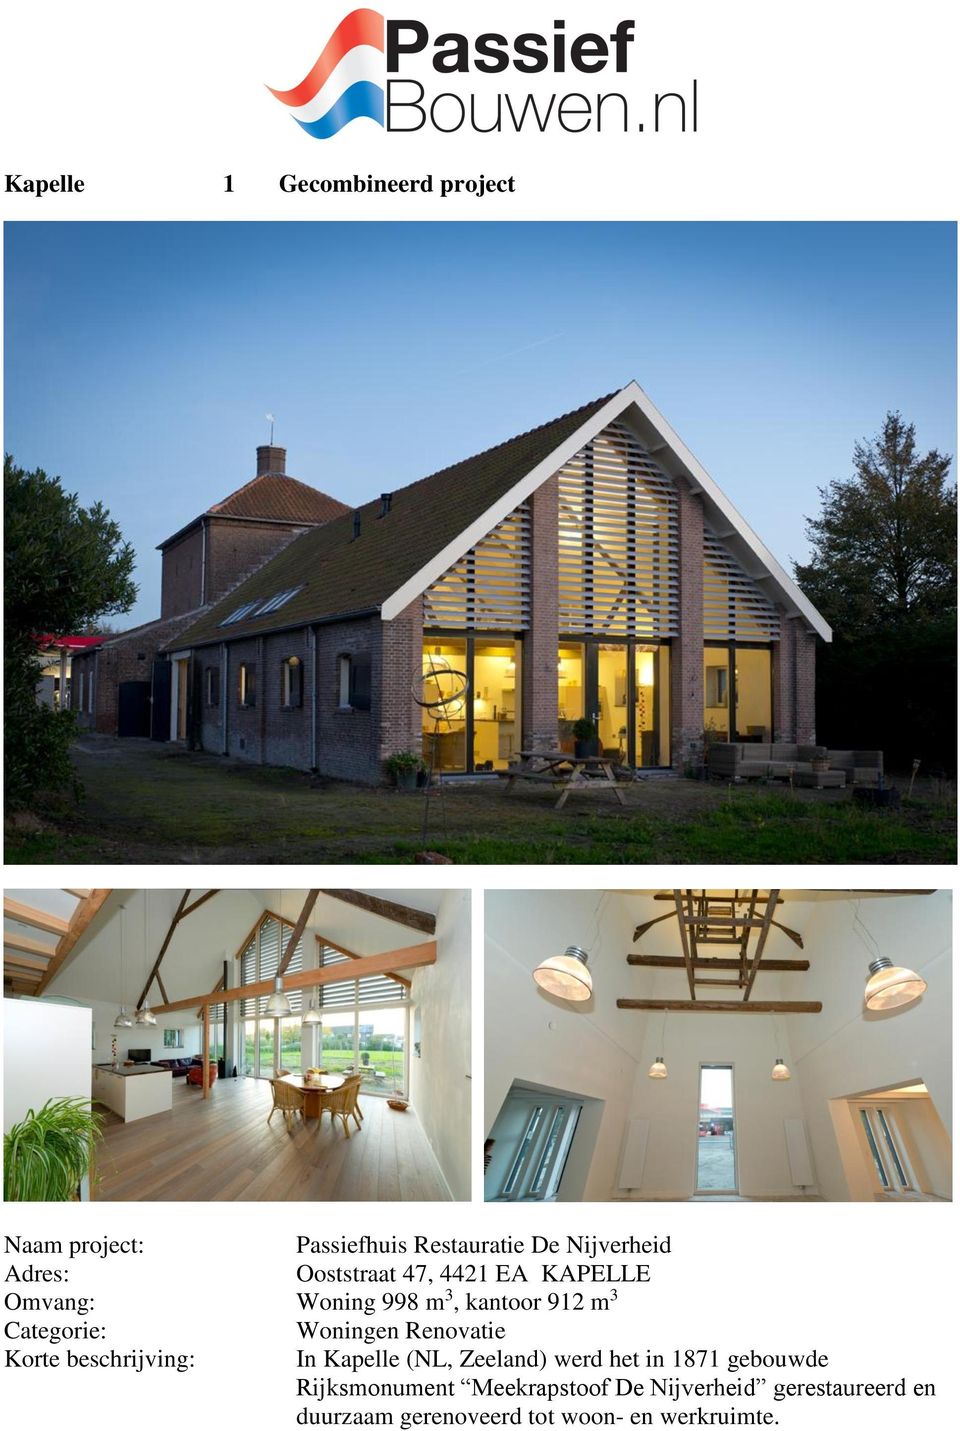 beschrijving: In Kapelle (NL, Zeeland) werd het in 1871 gebouwde Rijksmonument